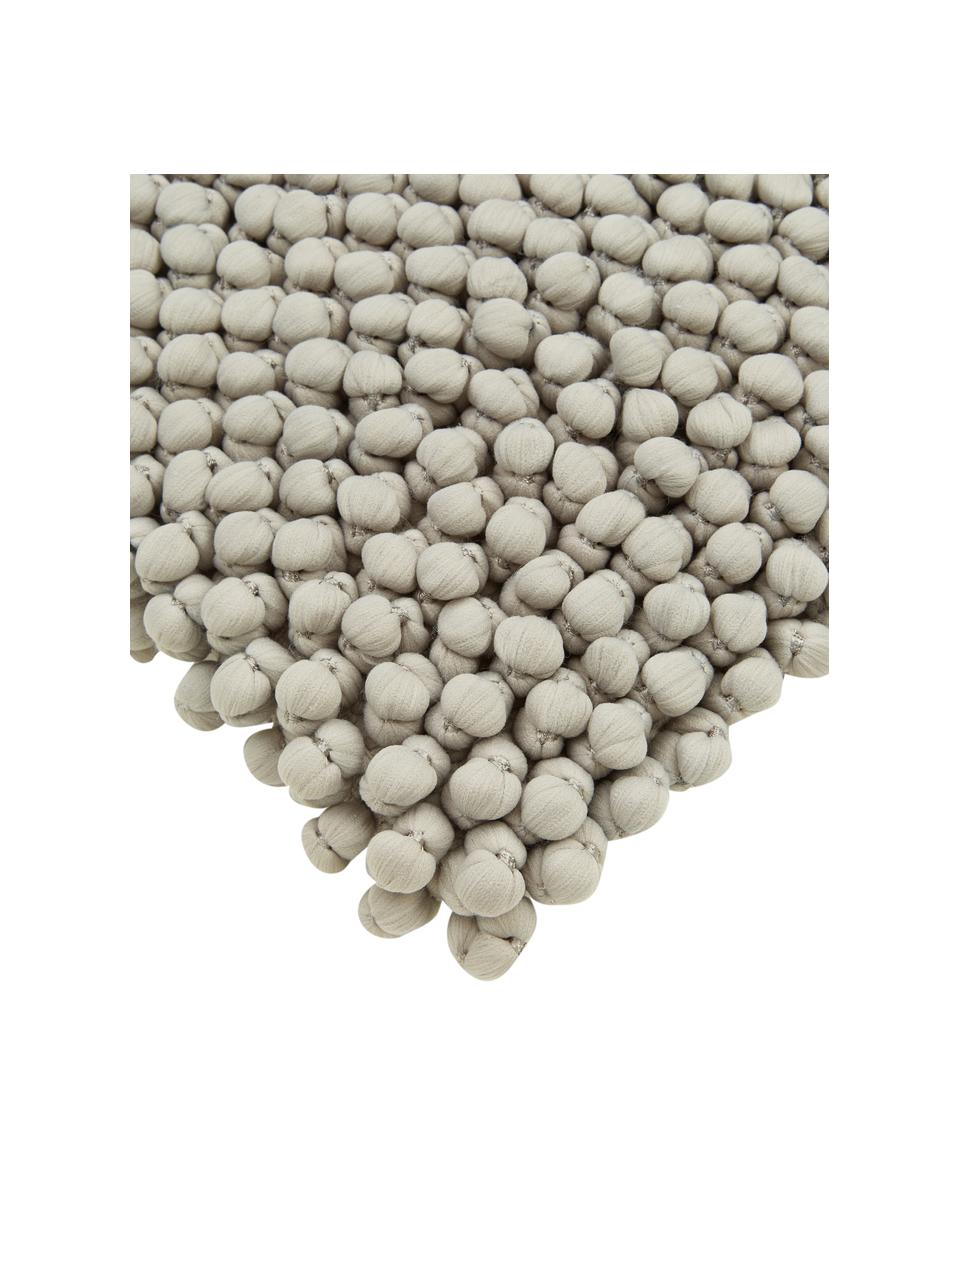 Federa arredo color grigio Iona, Retro: 100% cotone, Grigio, Larg. 45 x Lung. 45 cm